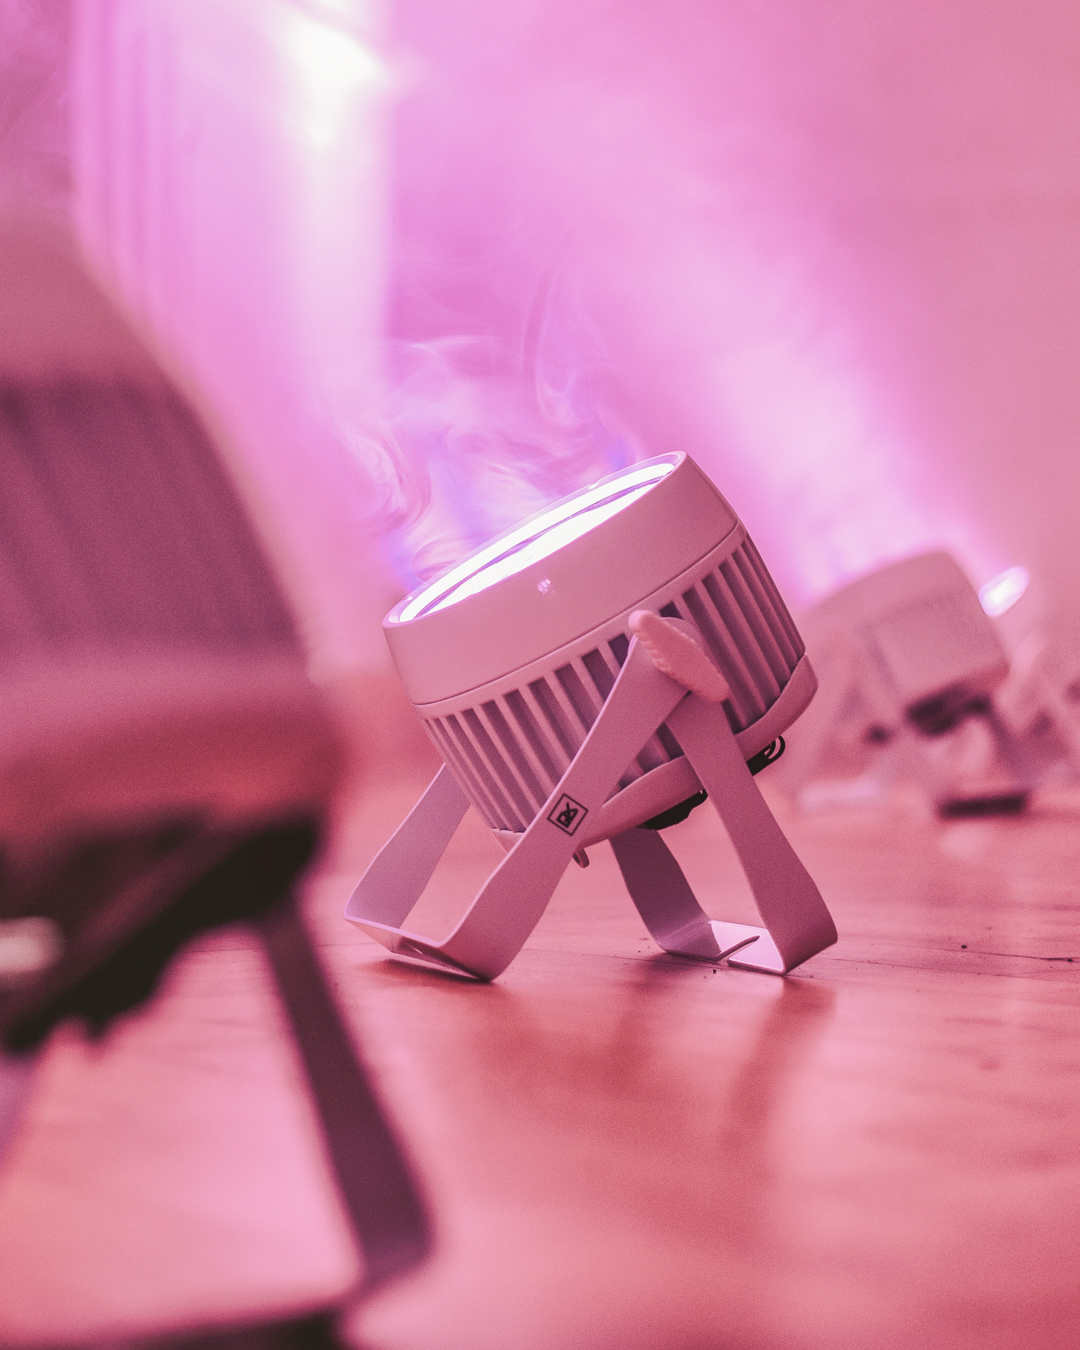 Ein moderner LED_Scheinwerfer erzeugt ein atmosphärisches pinkes Licht, das den Raum in ein warmes Ambiente taucht.